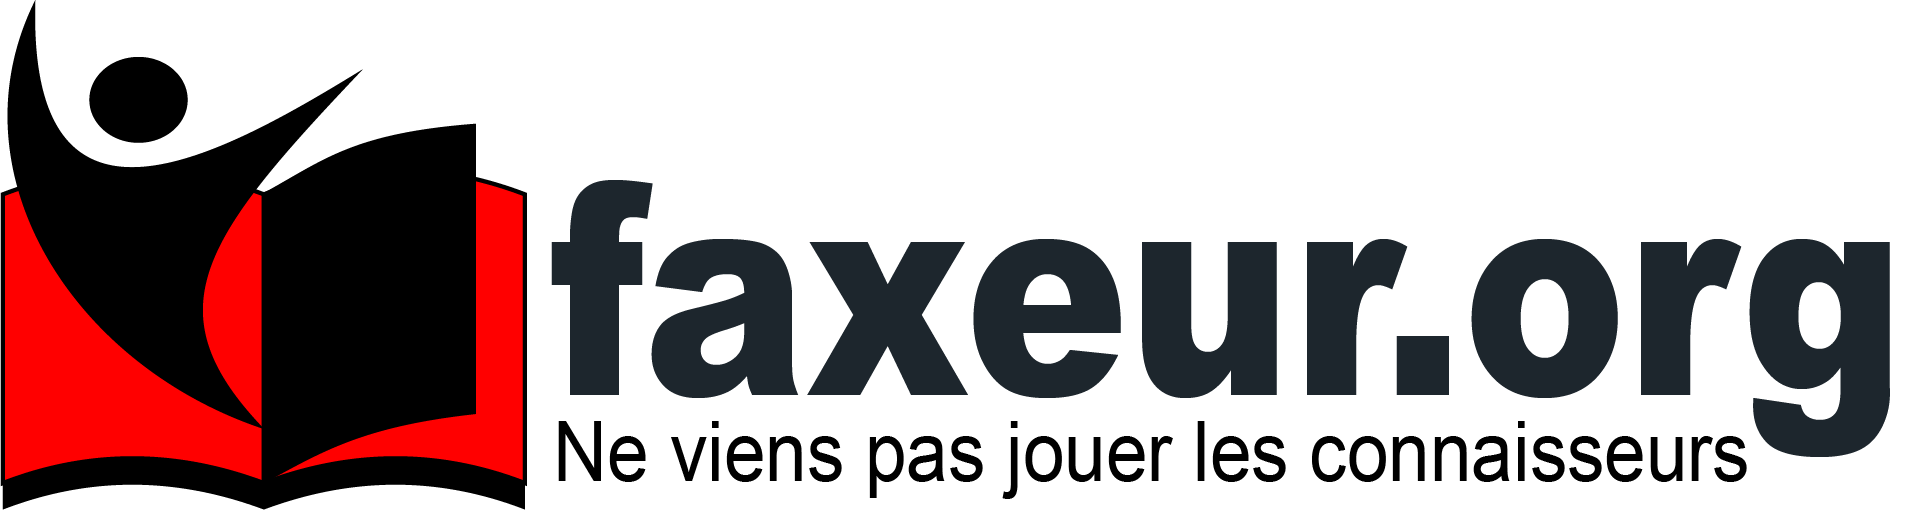 faxeur.org